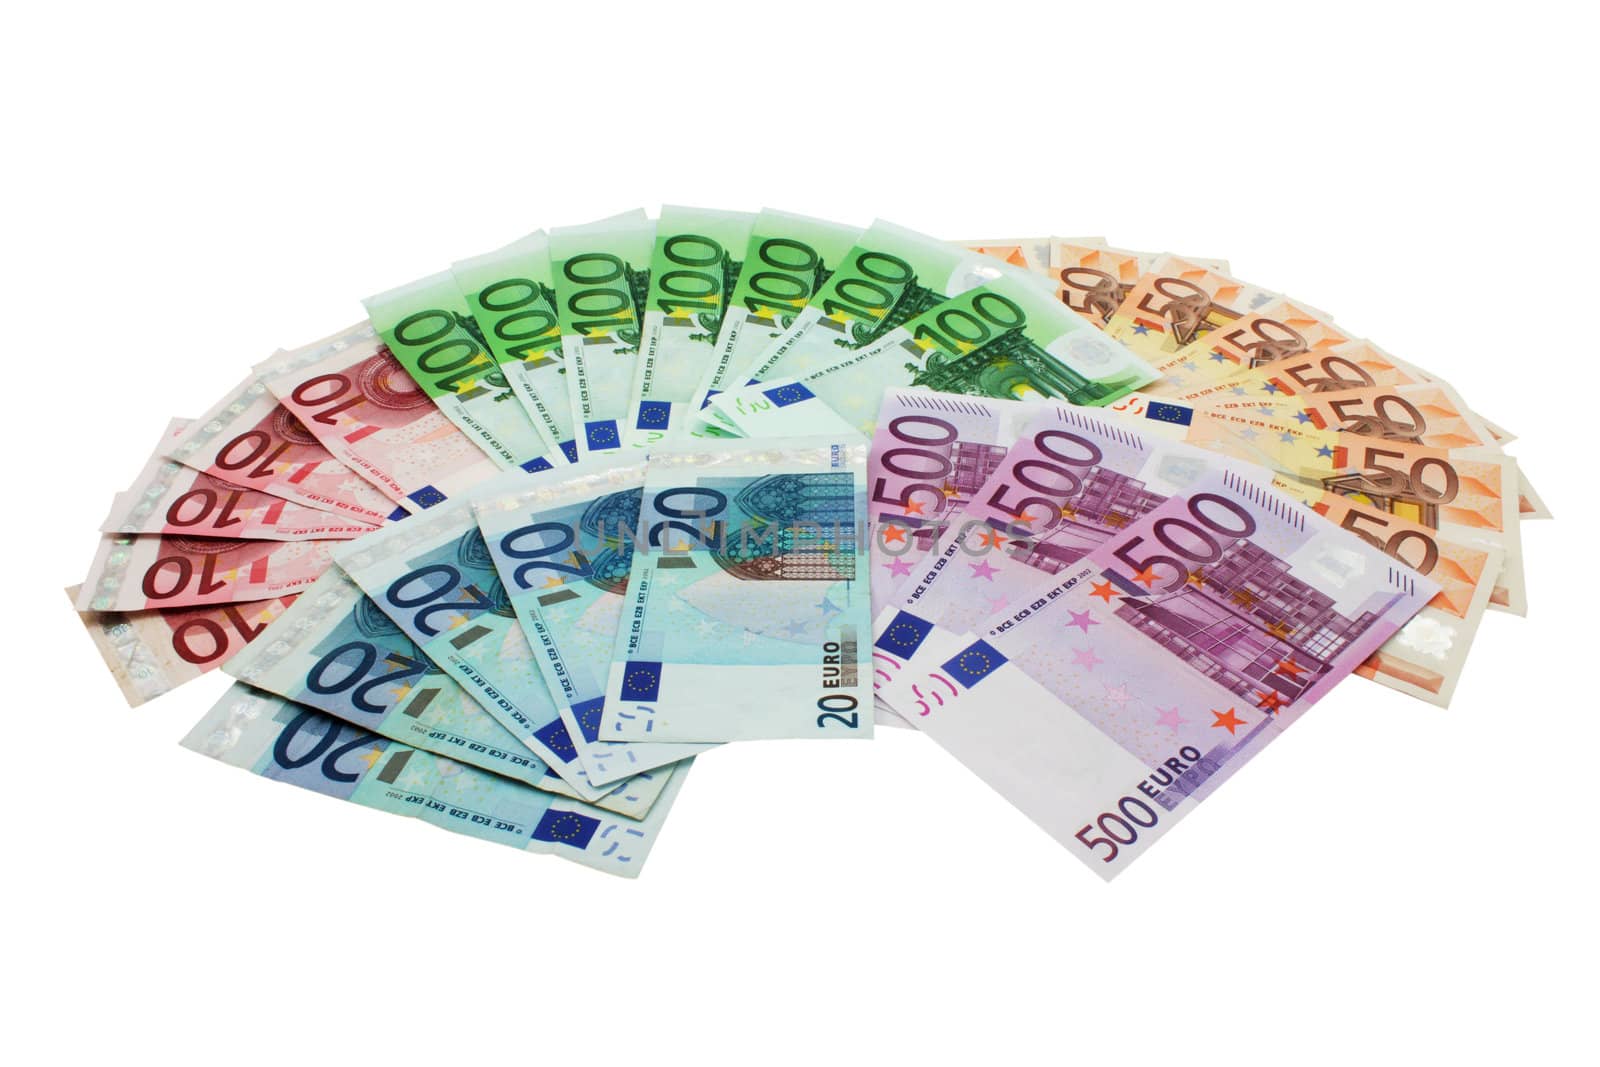 European Union Currency shaped in a fan